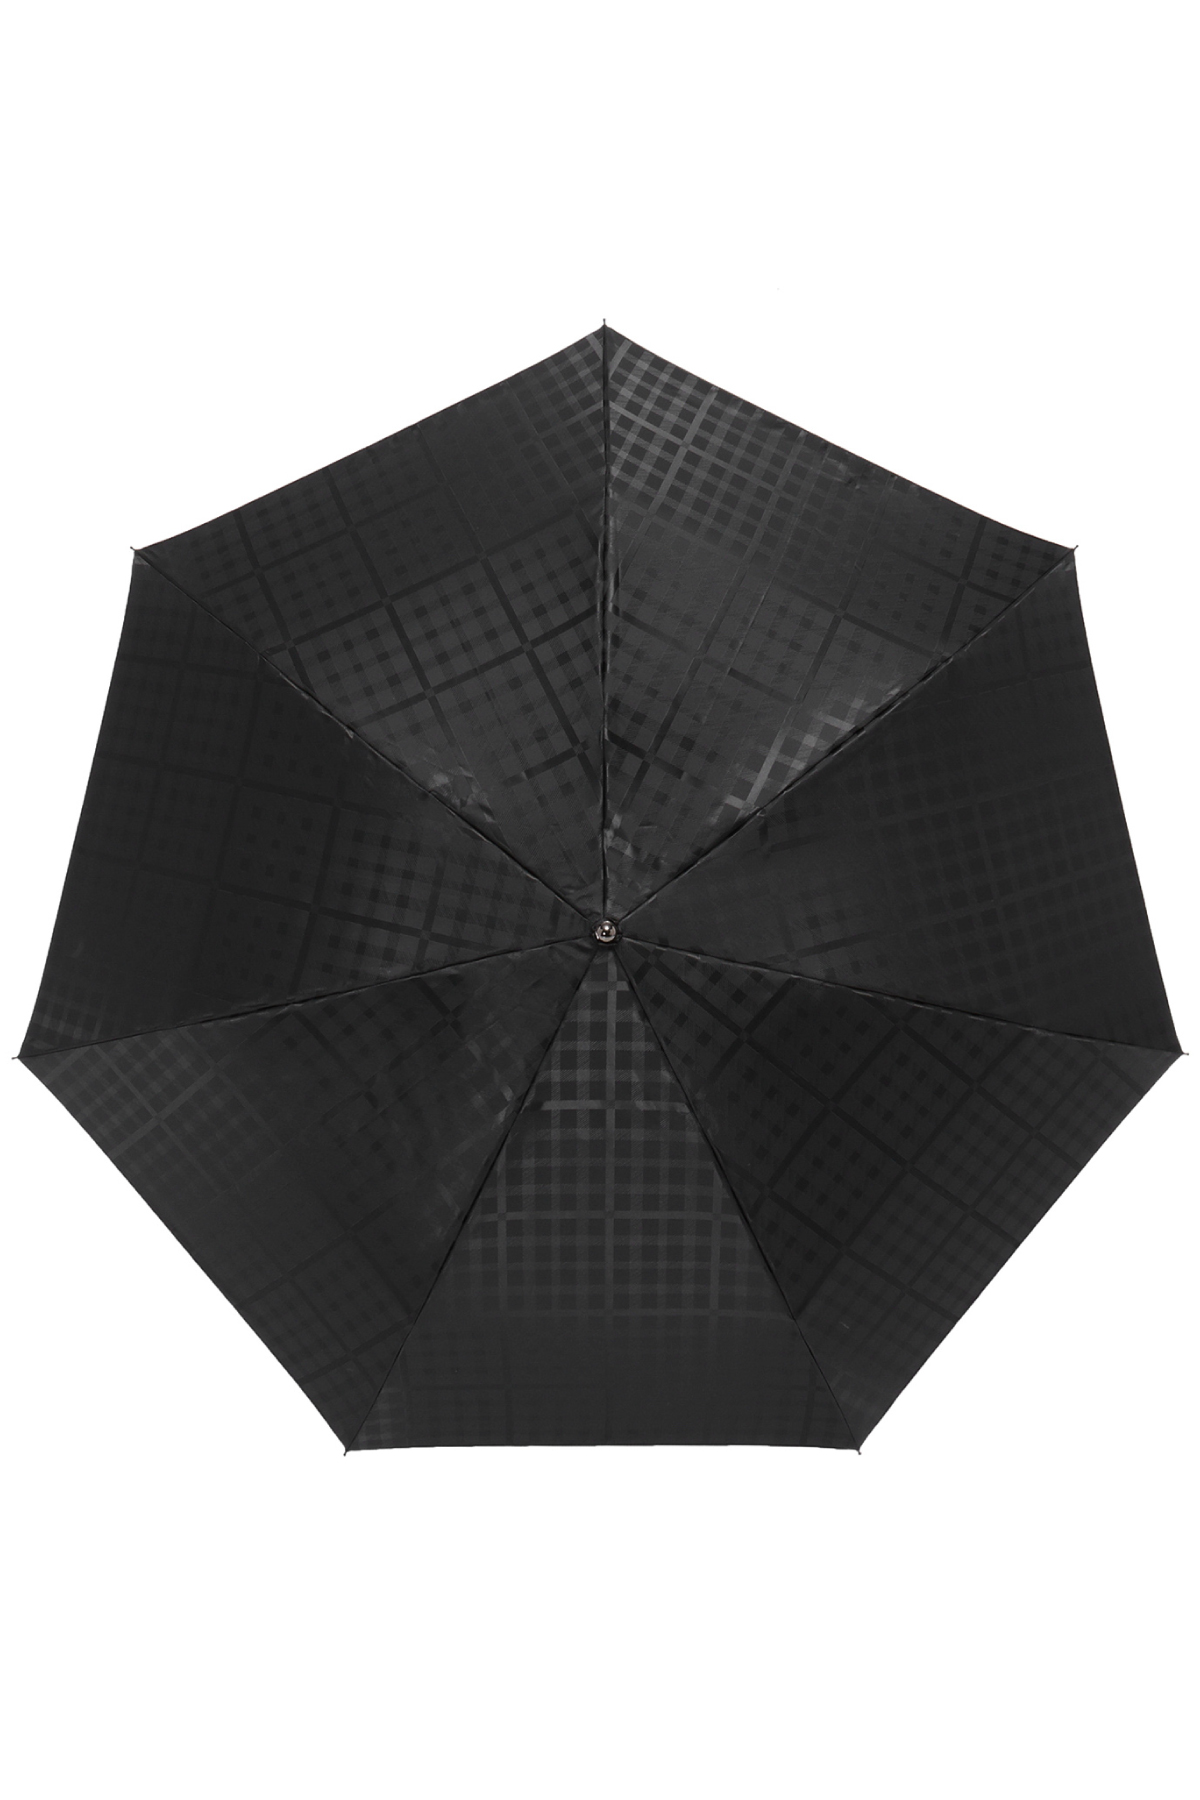 【雨傘】ミニ折りたたみ傘ジャカード 詳細画像 1